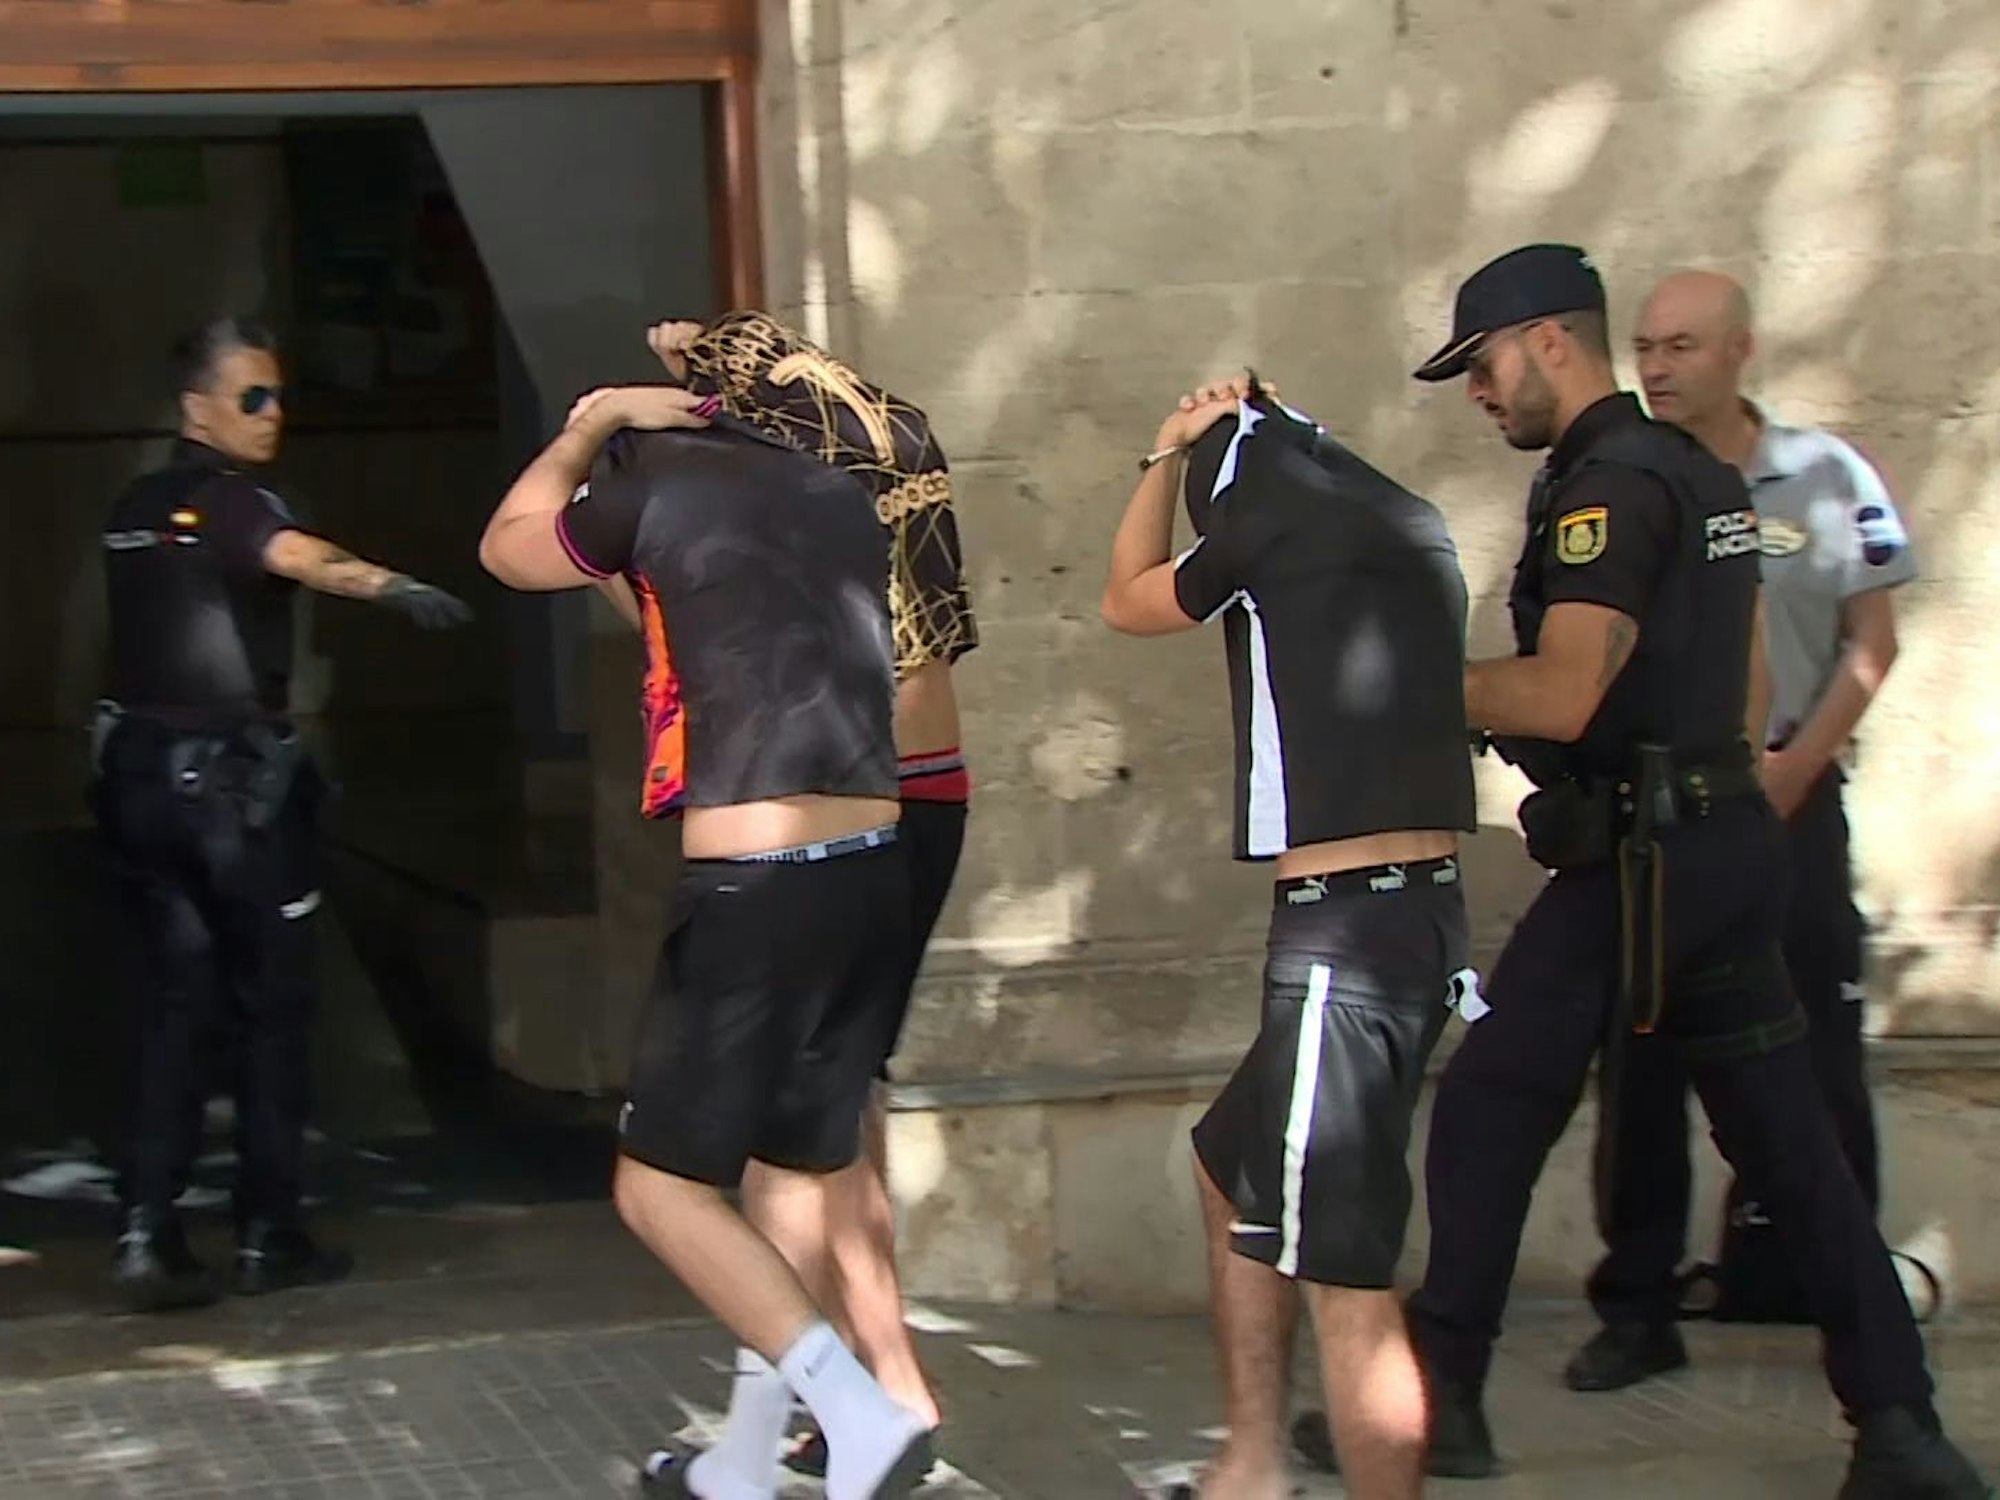 Einige der Tatverdächtigen in Begleitung der Polizei auf Mallorca.